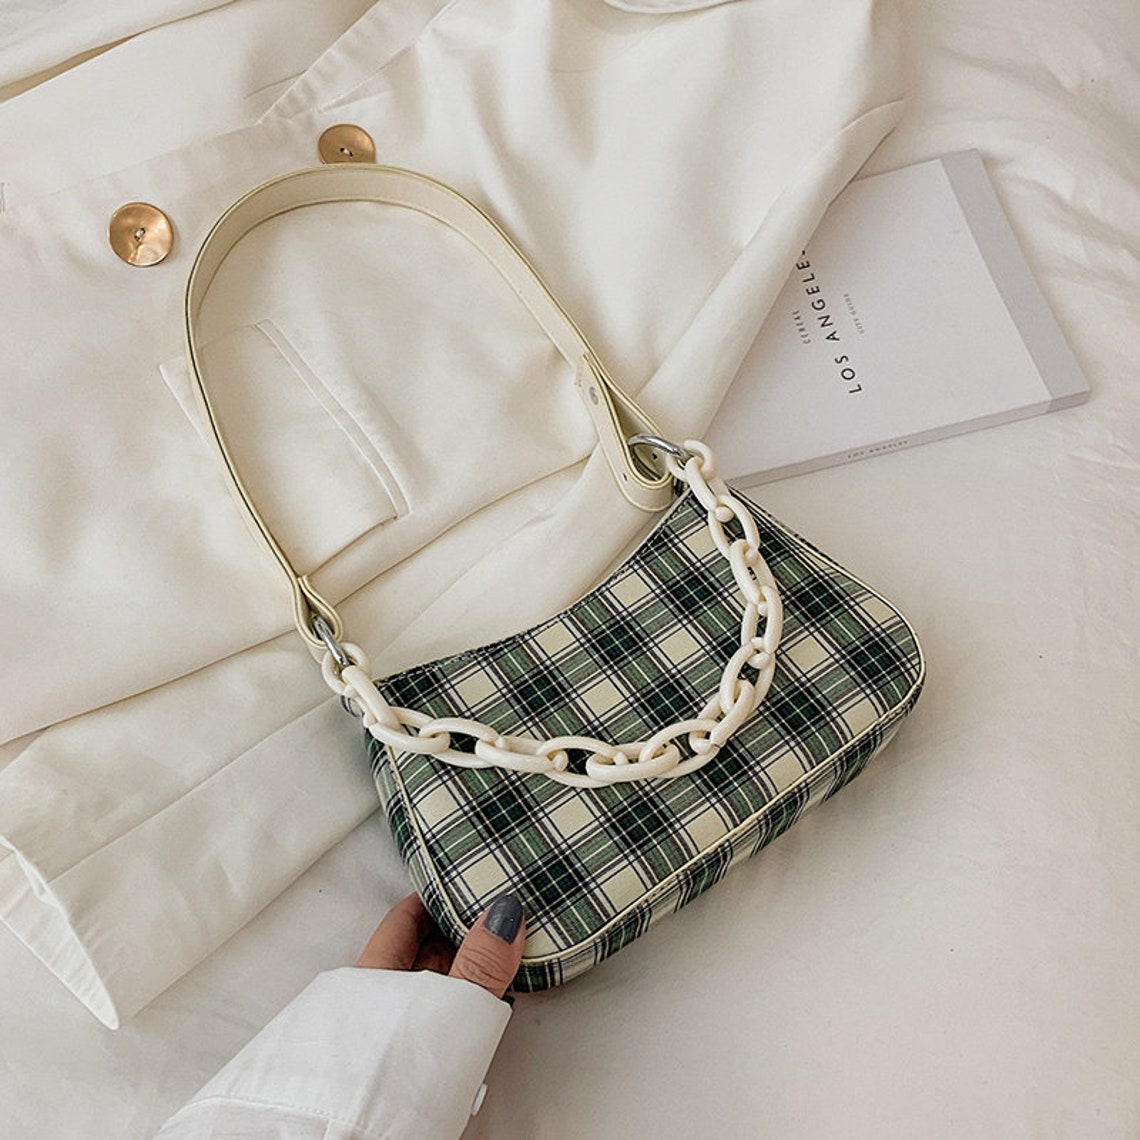 Grid pattern bag-Messenger bag-Baguette bag-Tote bag-Shoulder | Etsy